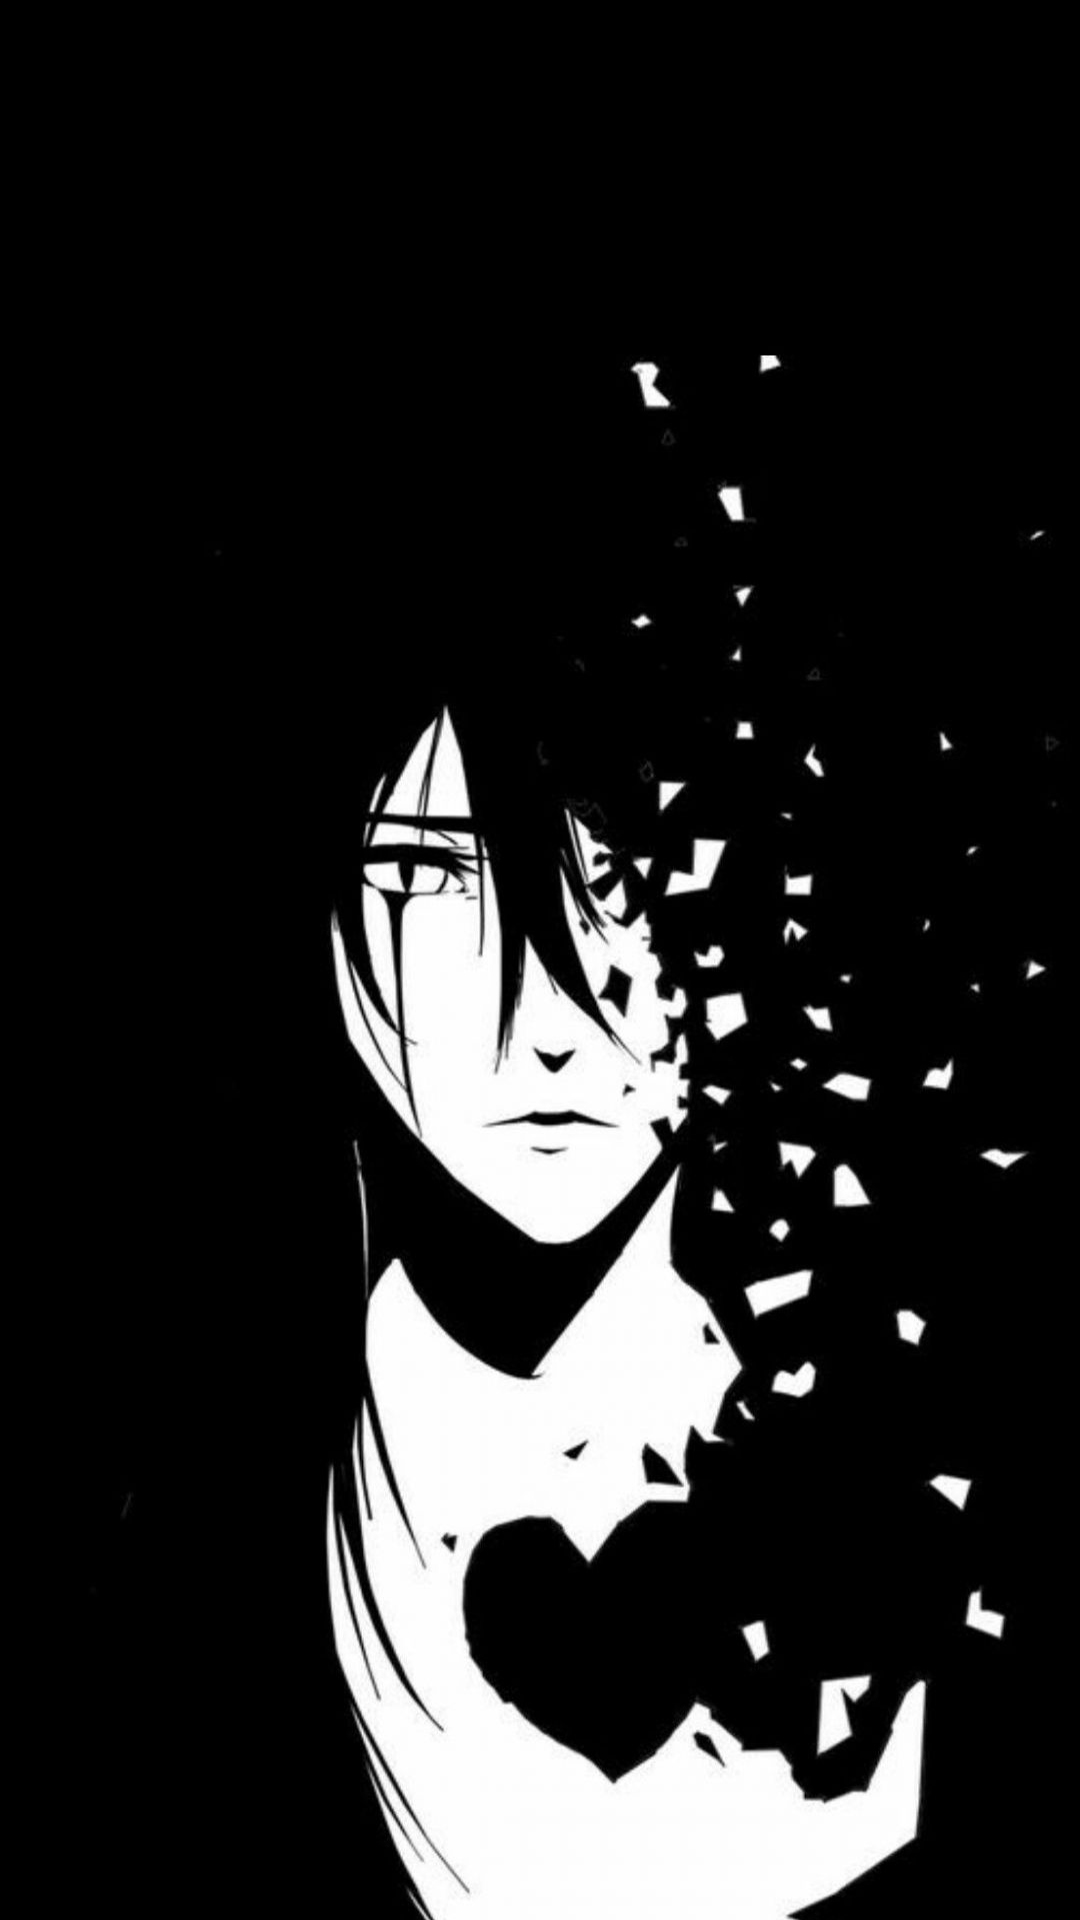 Ảnh Anime màu đen  Hình nền Anime đen tối màu cực đẹp  Anime background  Cute anime wallpaper Anime scenery